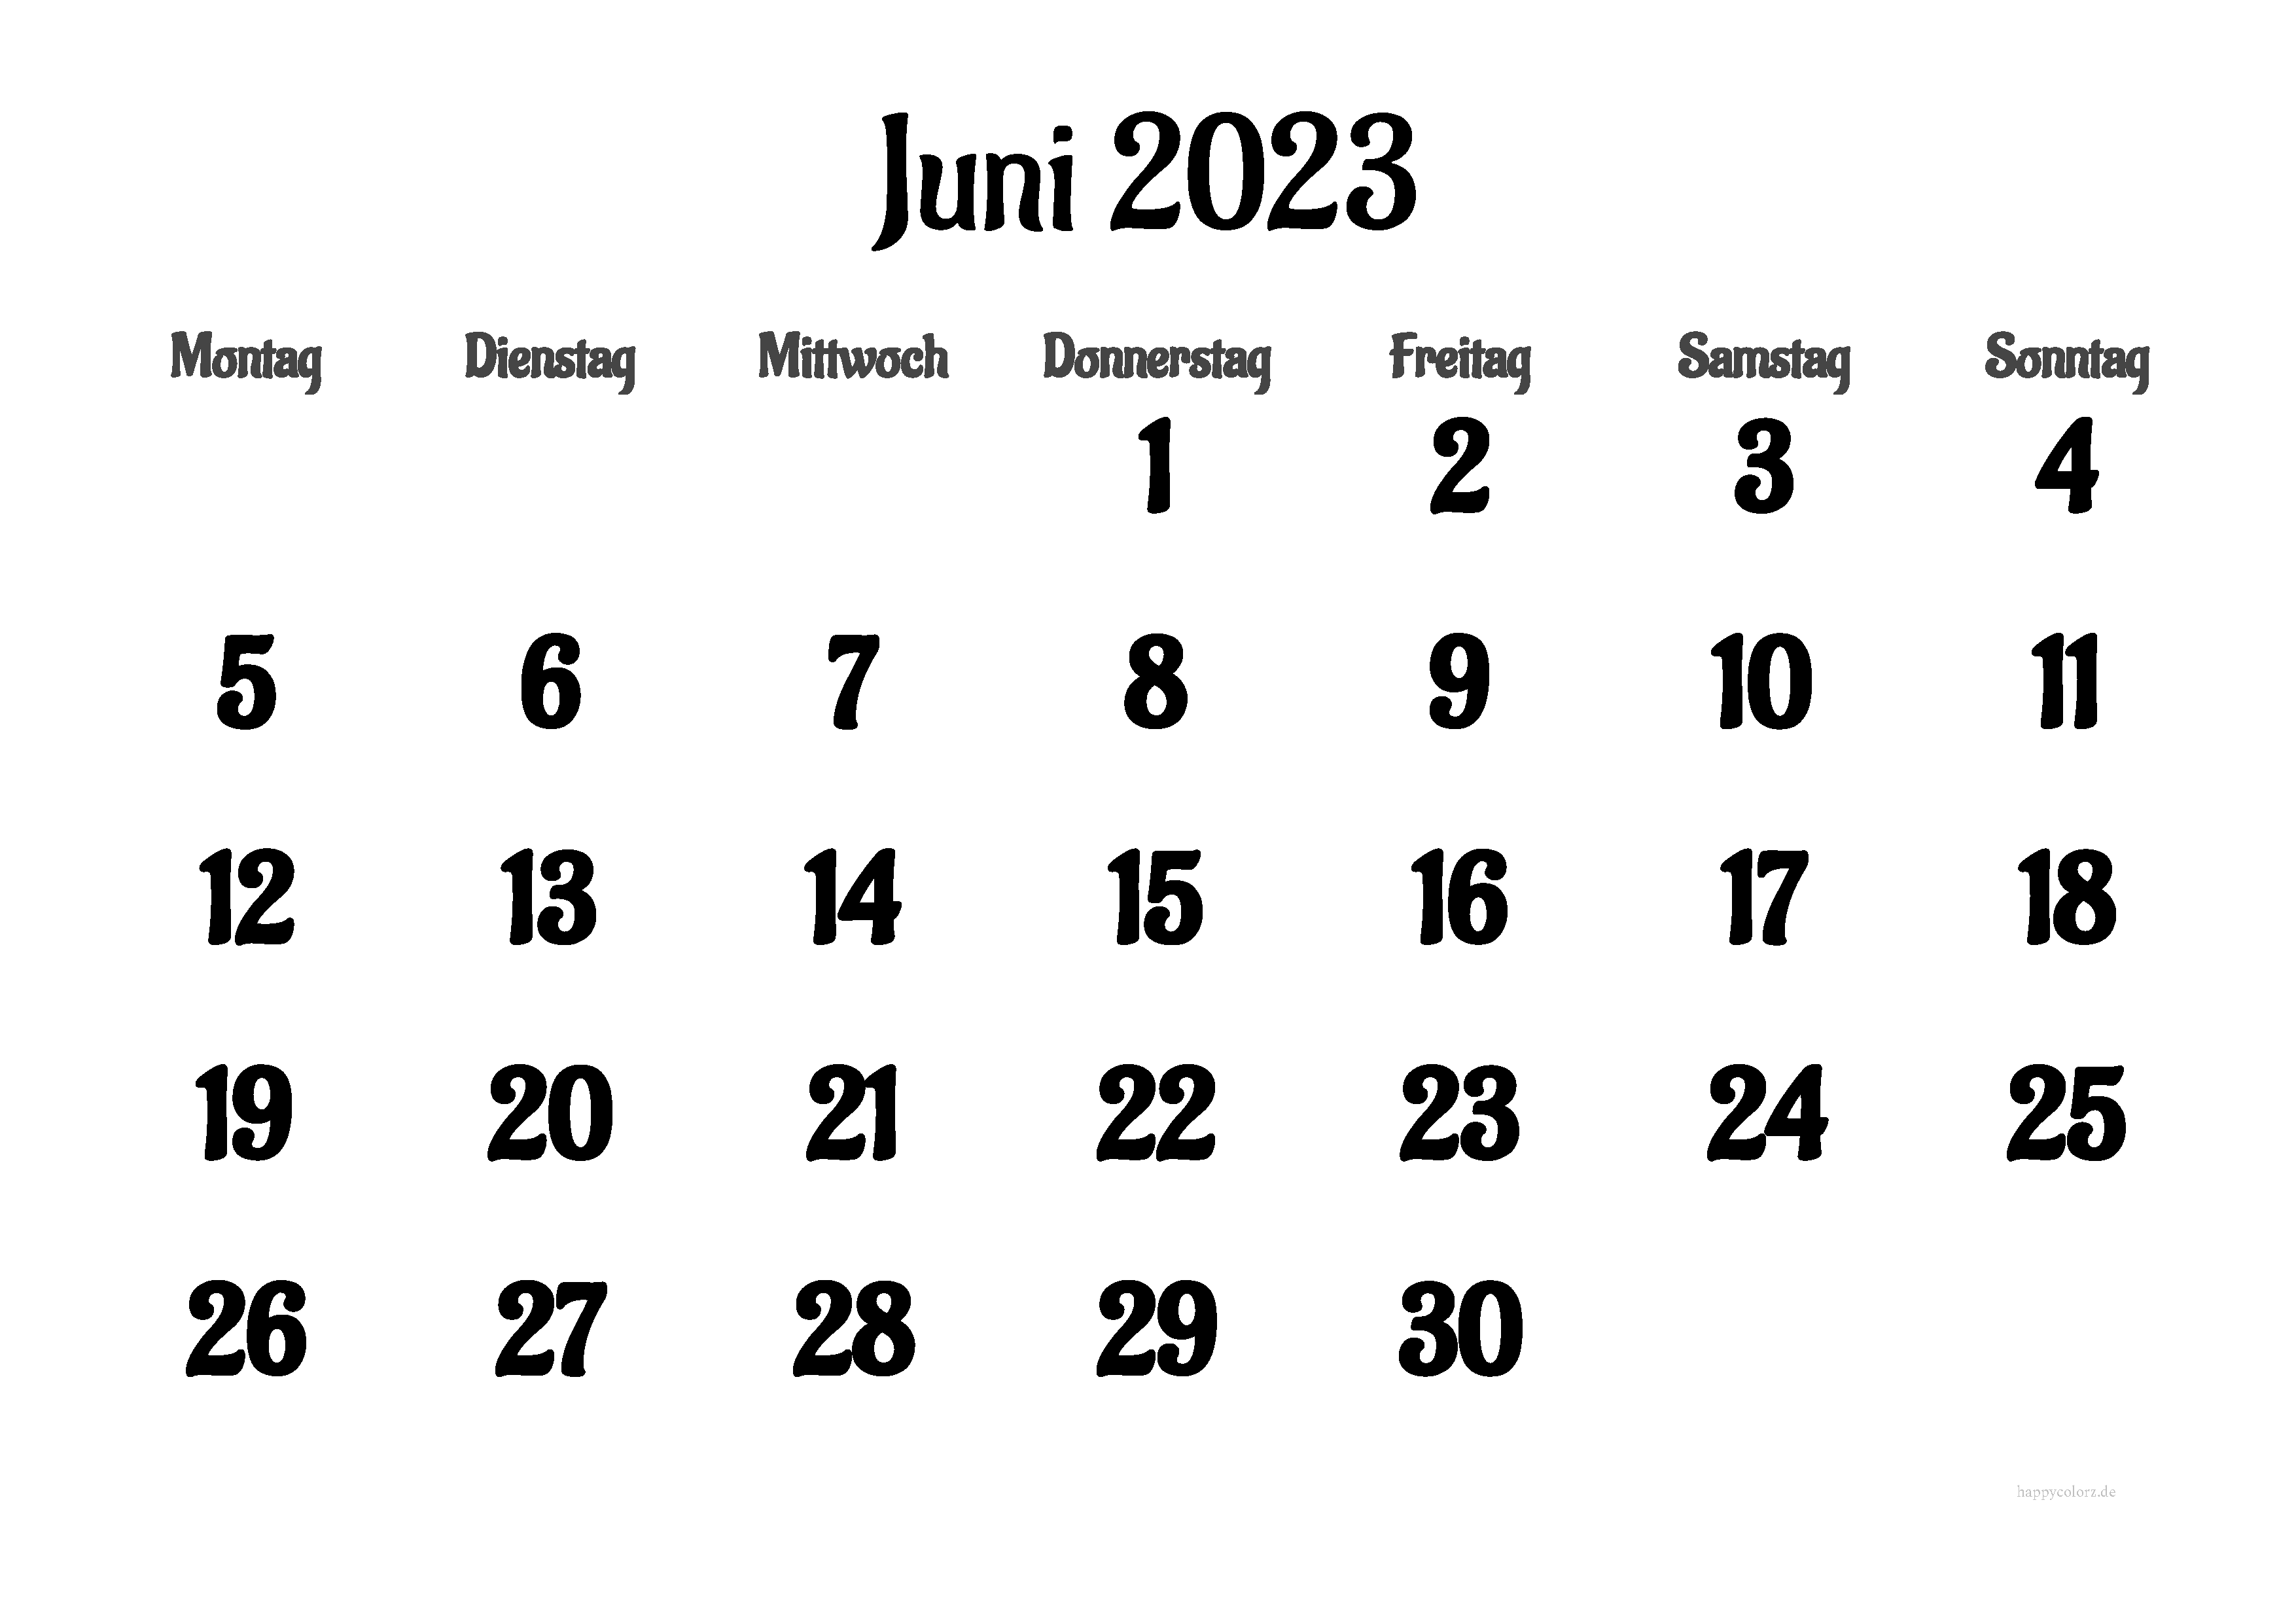 Behalten Sie Ihre Termine im Auge mit unserem druckbaren Kalender für Juni 2023